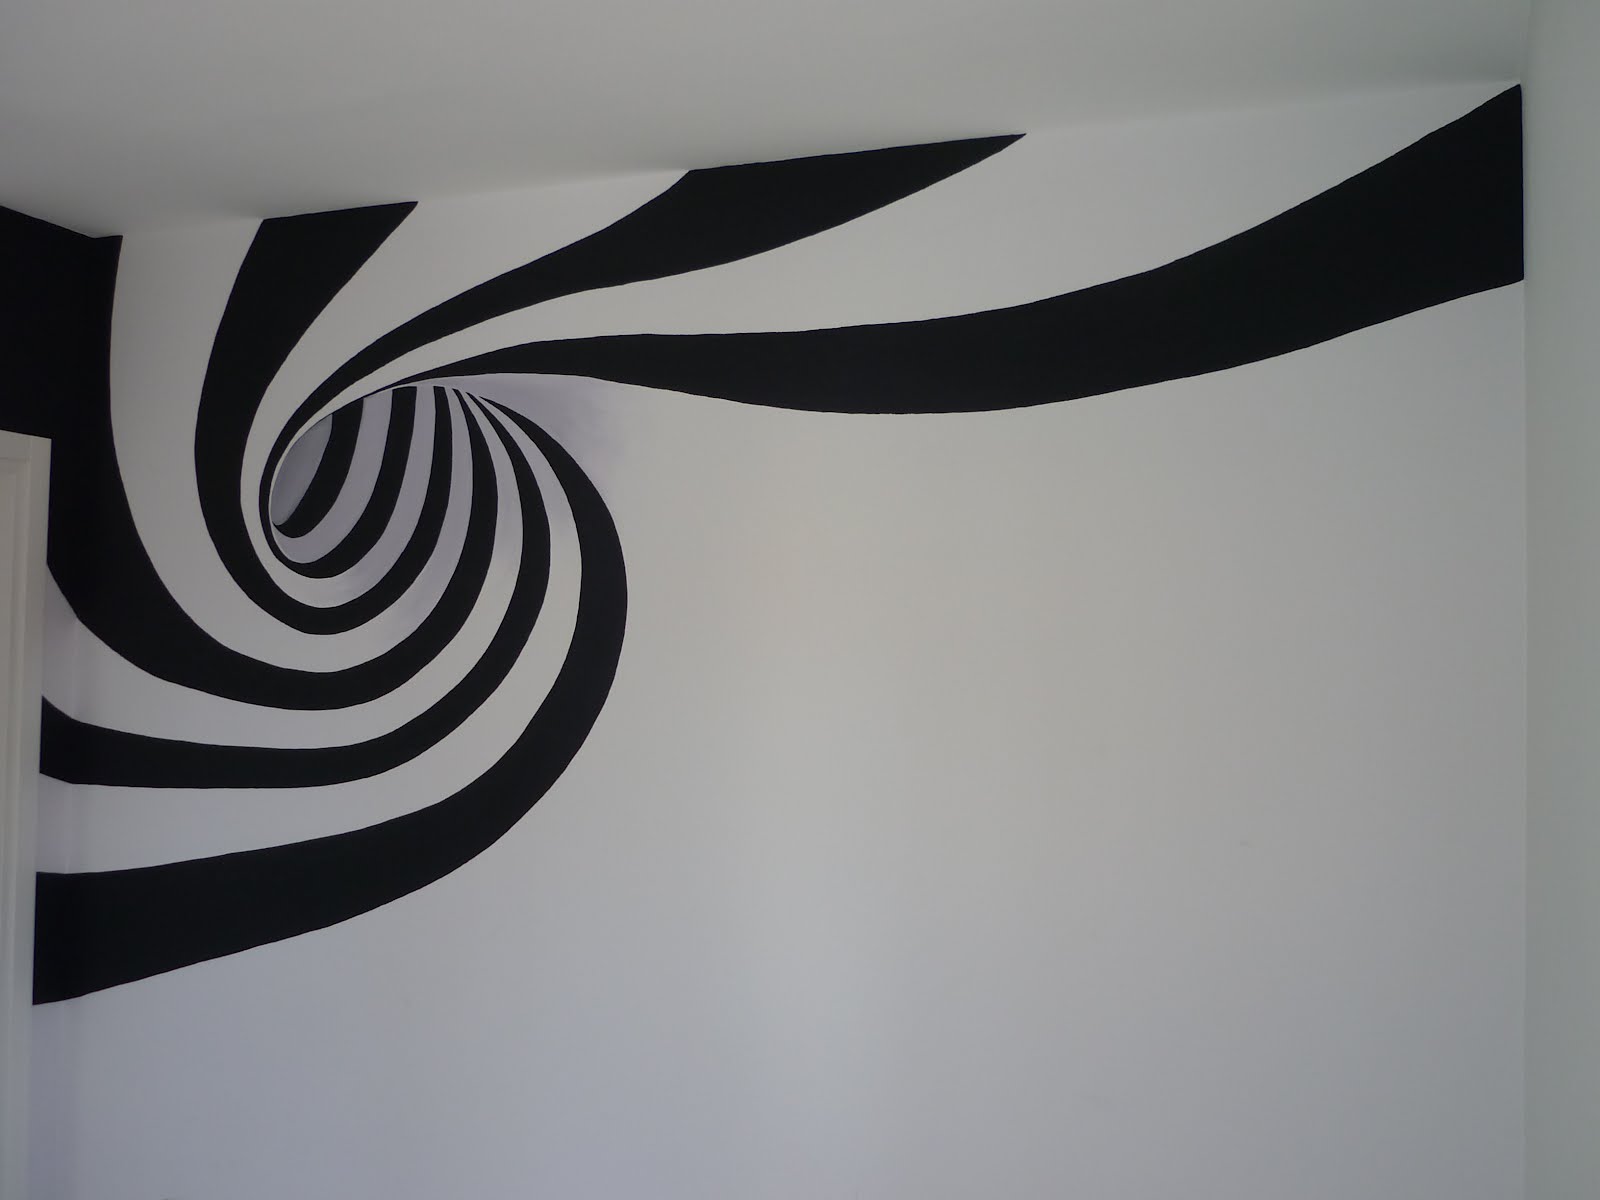 A ¨ una ragazza fantasiosa ed appassionata di design Appena ha visto il disegno di questa spirale si ¨ subito affezionata all idea per decorare le pareti